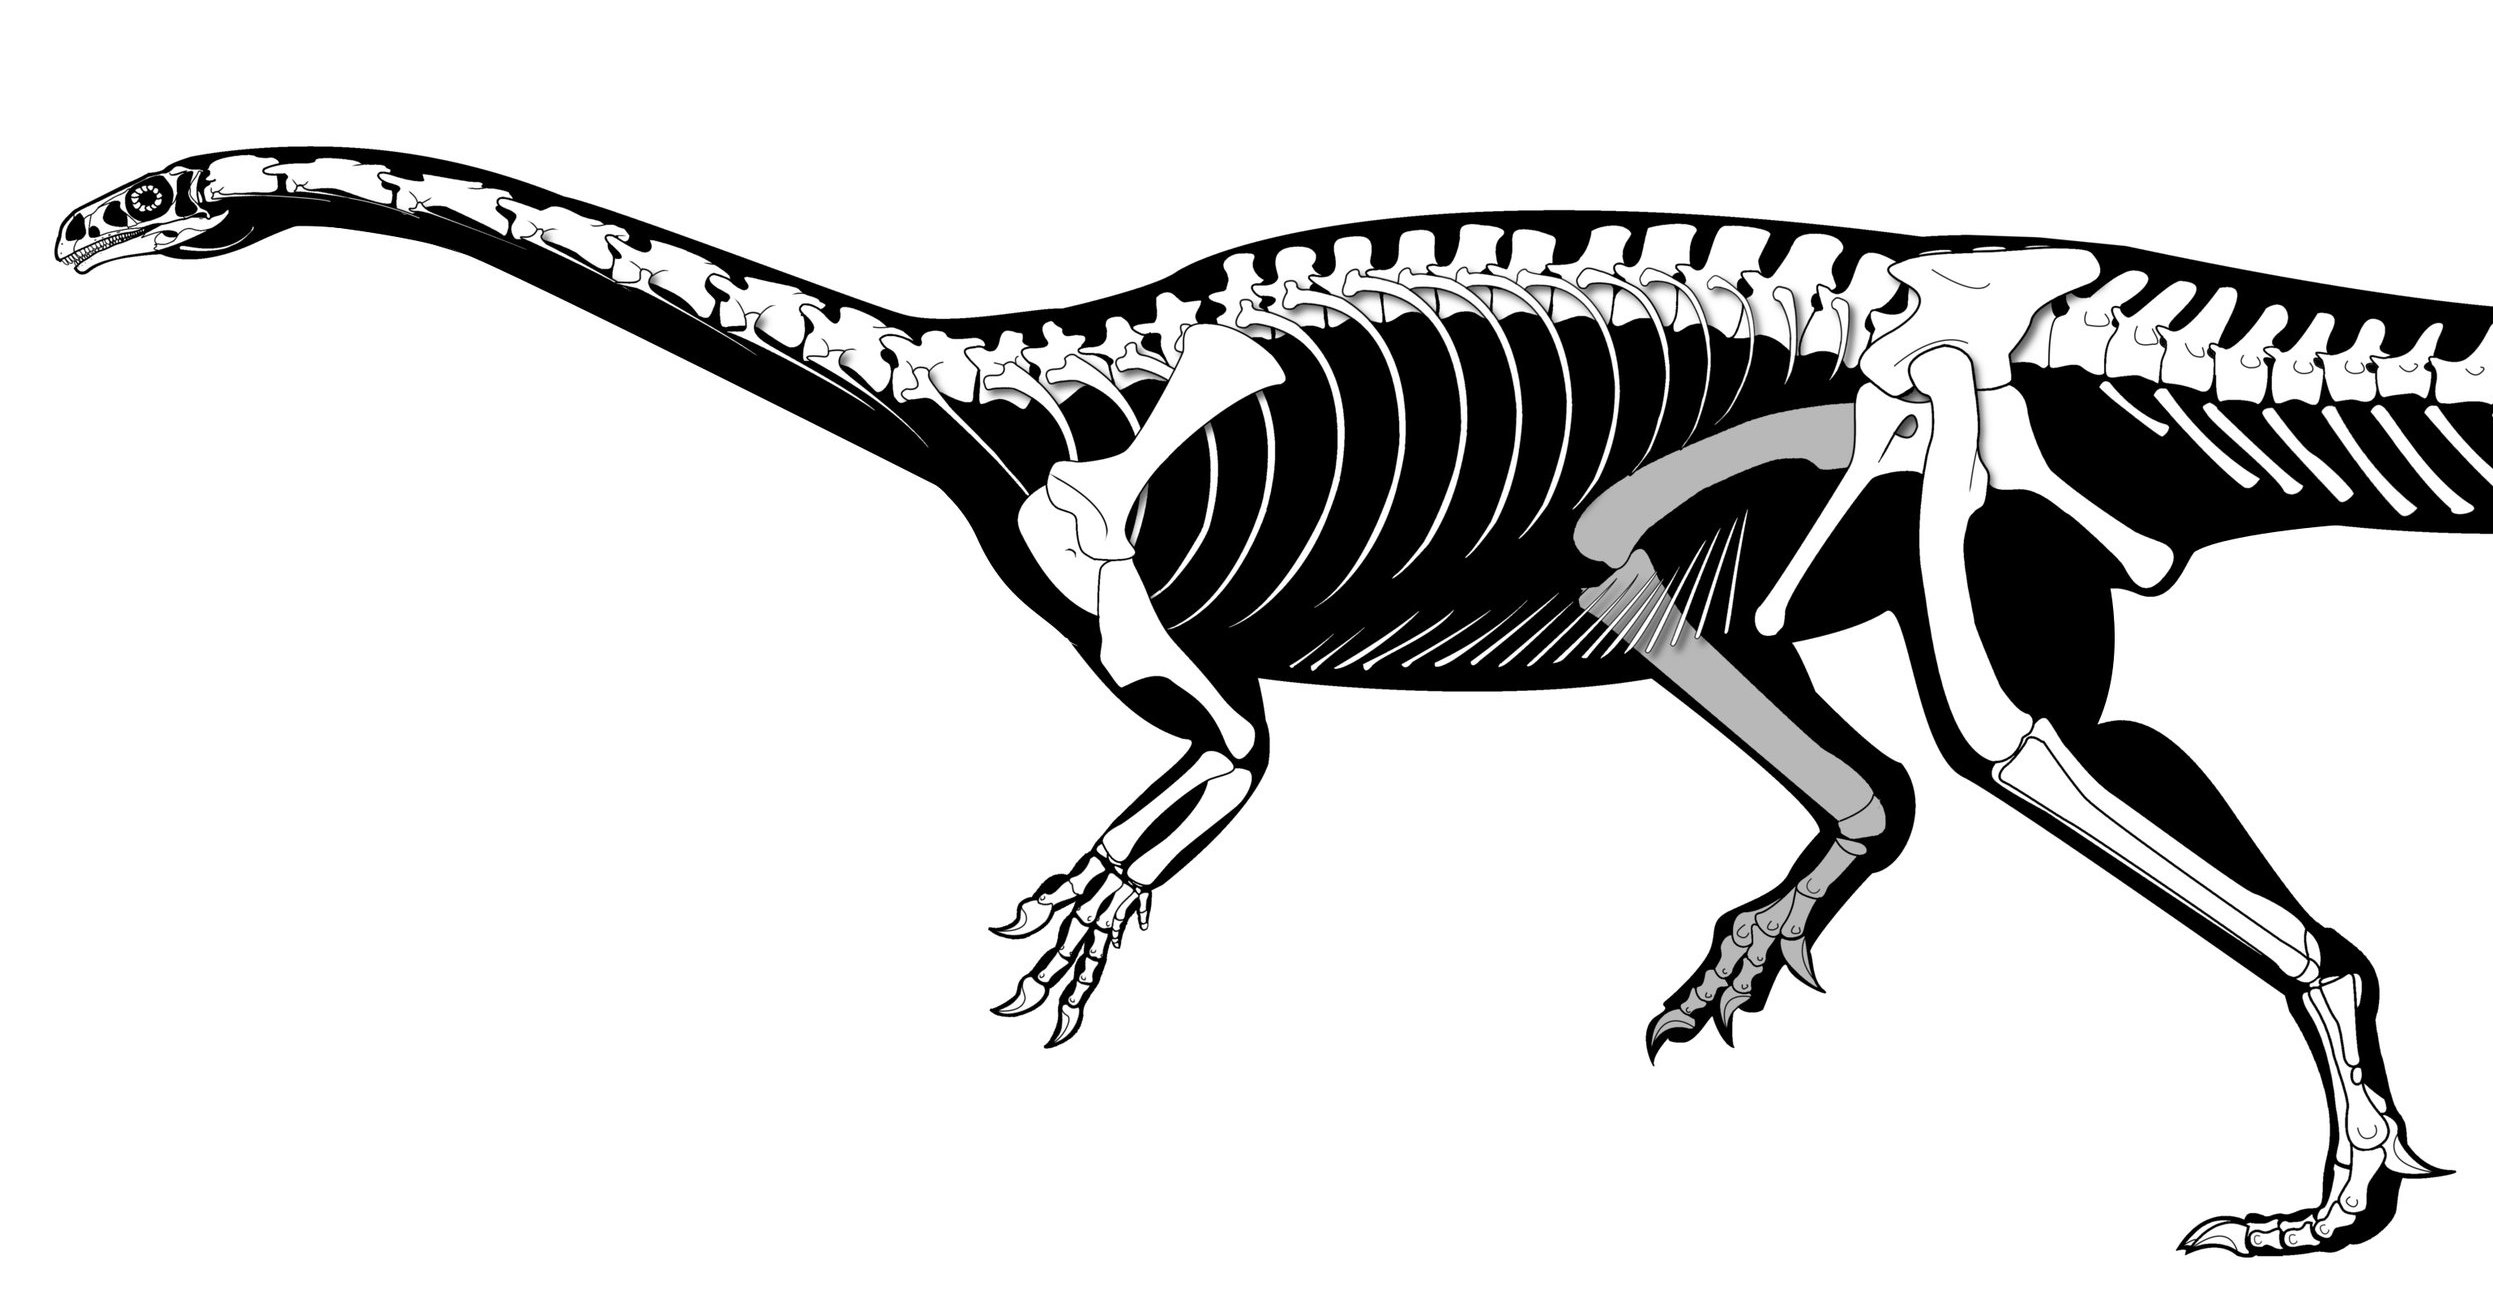 Обнаружены древнейшие длинношеие динозавры